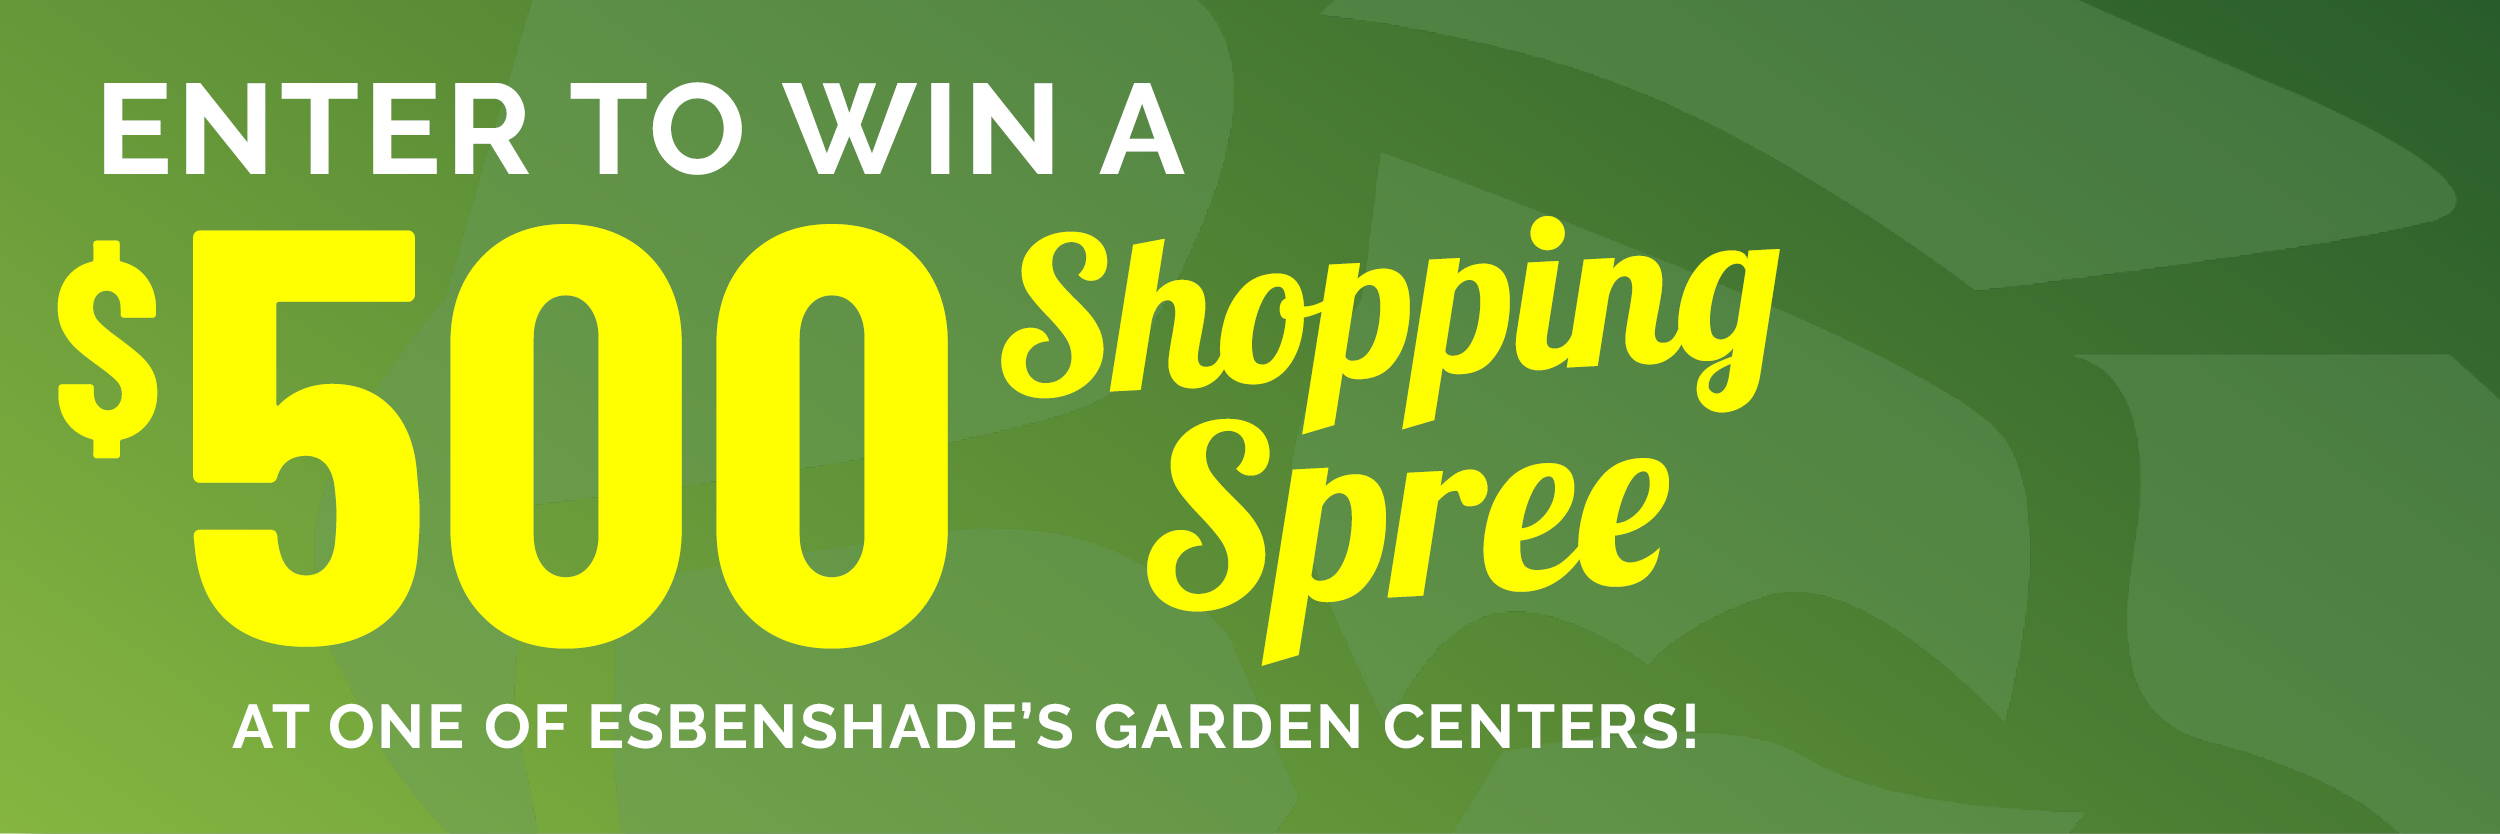 Enter to win a $500 Shopping Spree at one of Esbenshade's Garden Centers!